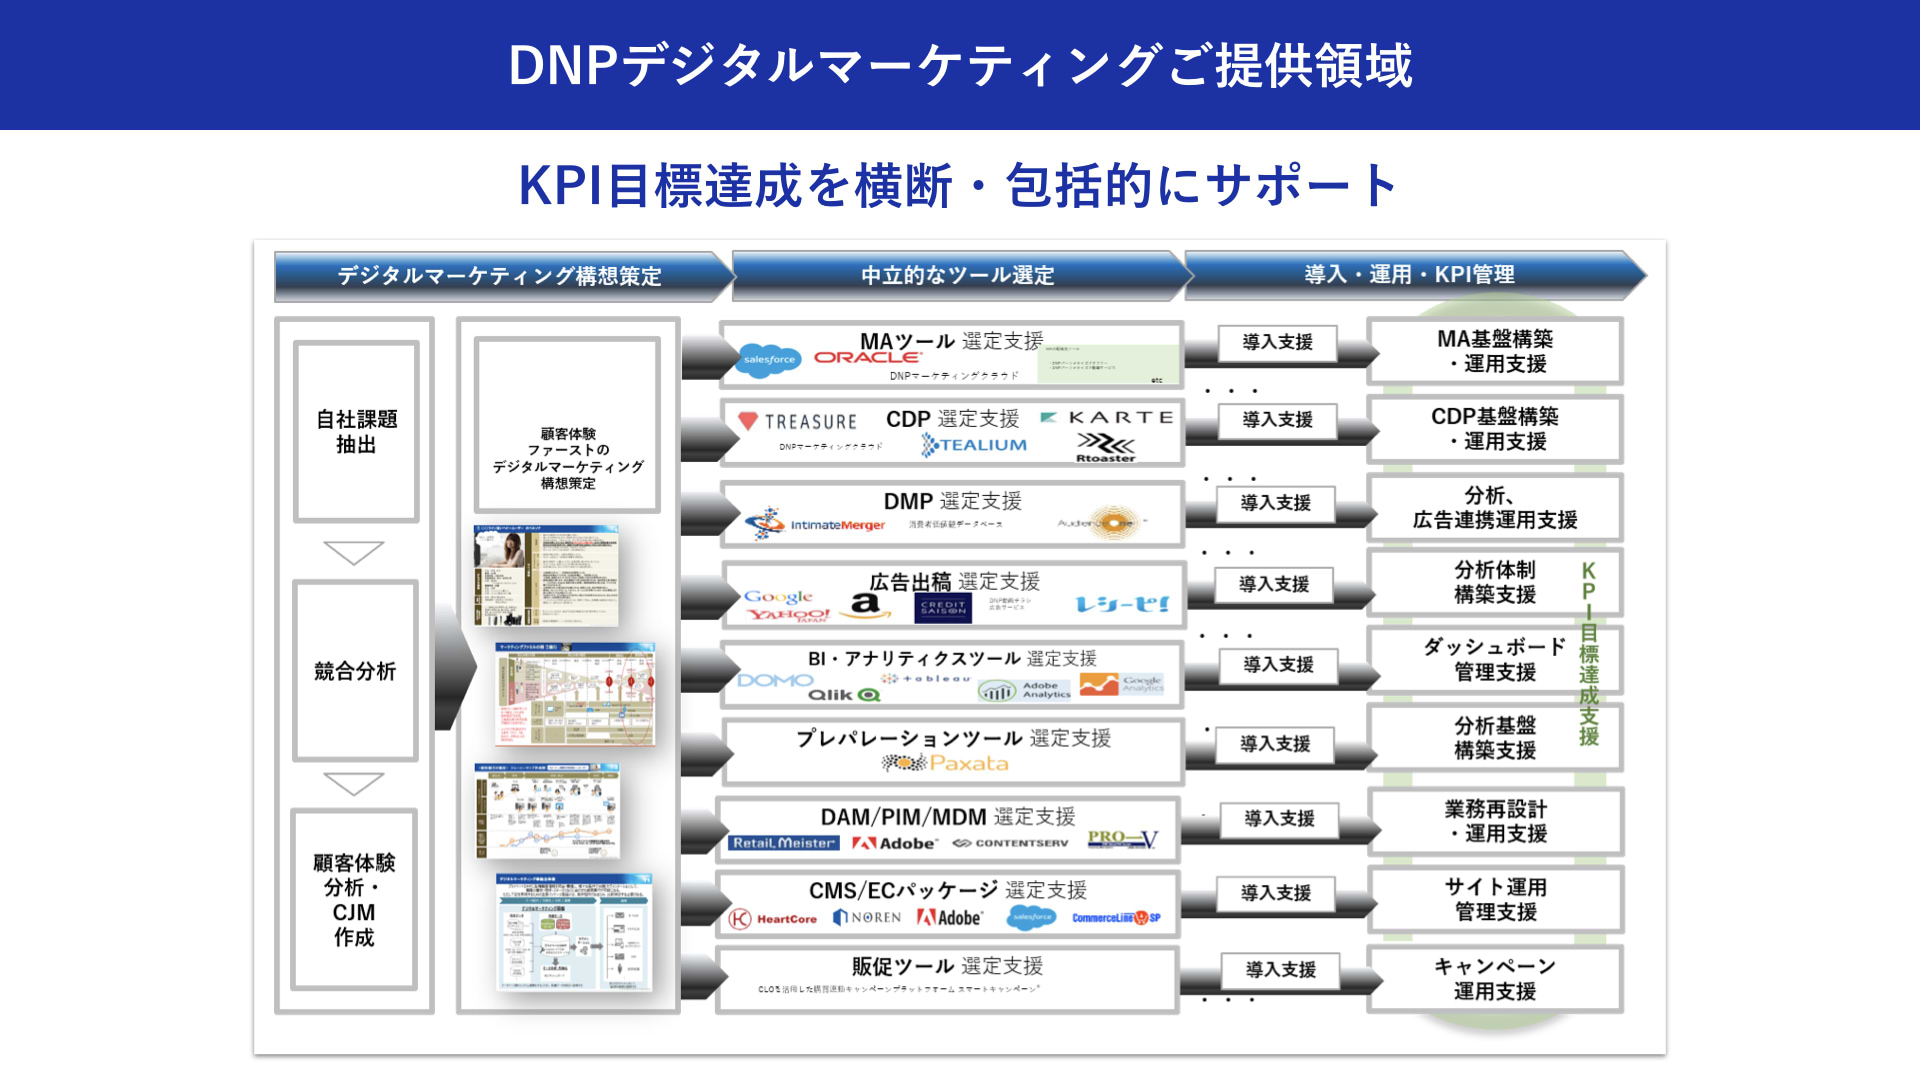 大日本印刷株式会社：加藤 綱貴 DNPデジタルマーケティングご提供領域